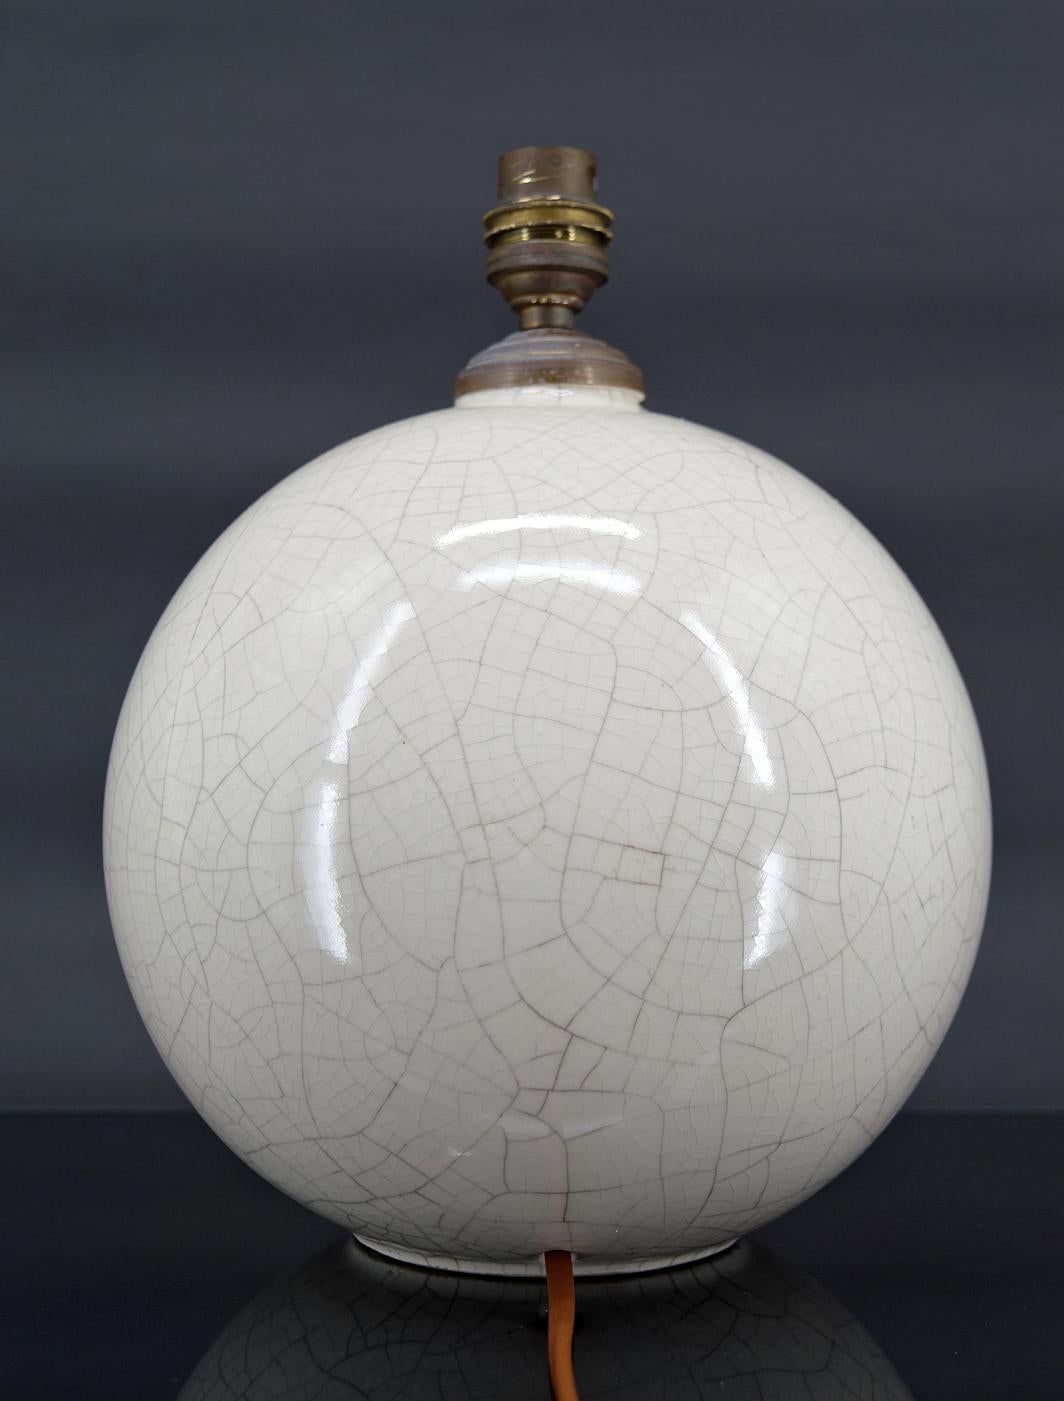 Rissige weiße Kugellampe.

Zuschreibung an Jean Besnard für Jacques-Émile Ruhlmann, Frankreich, um 1920
Nicht signiert.

In ausgezeichnetem Zustand, neuer Strom.

Abmessungen:
Höhe 25 cm
Durchmesser 20 cm